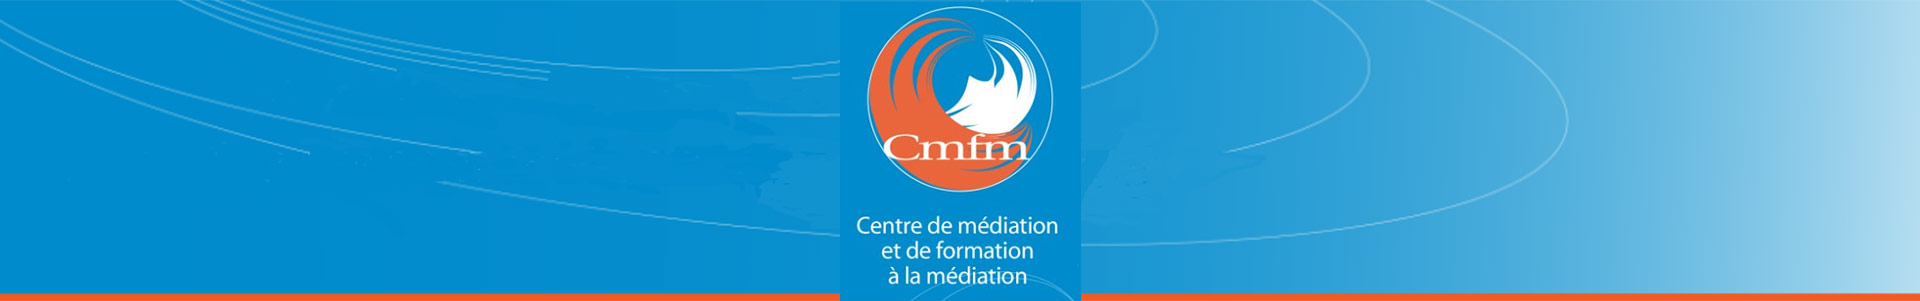 Centre de médiation et de formation à la médiation